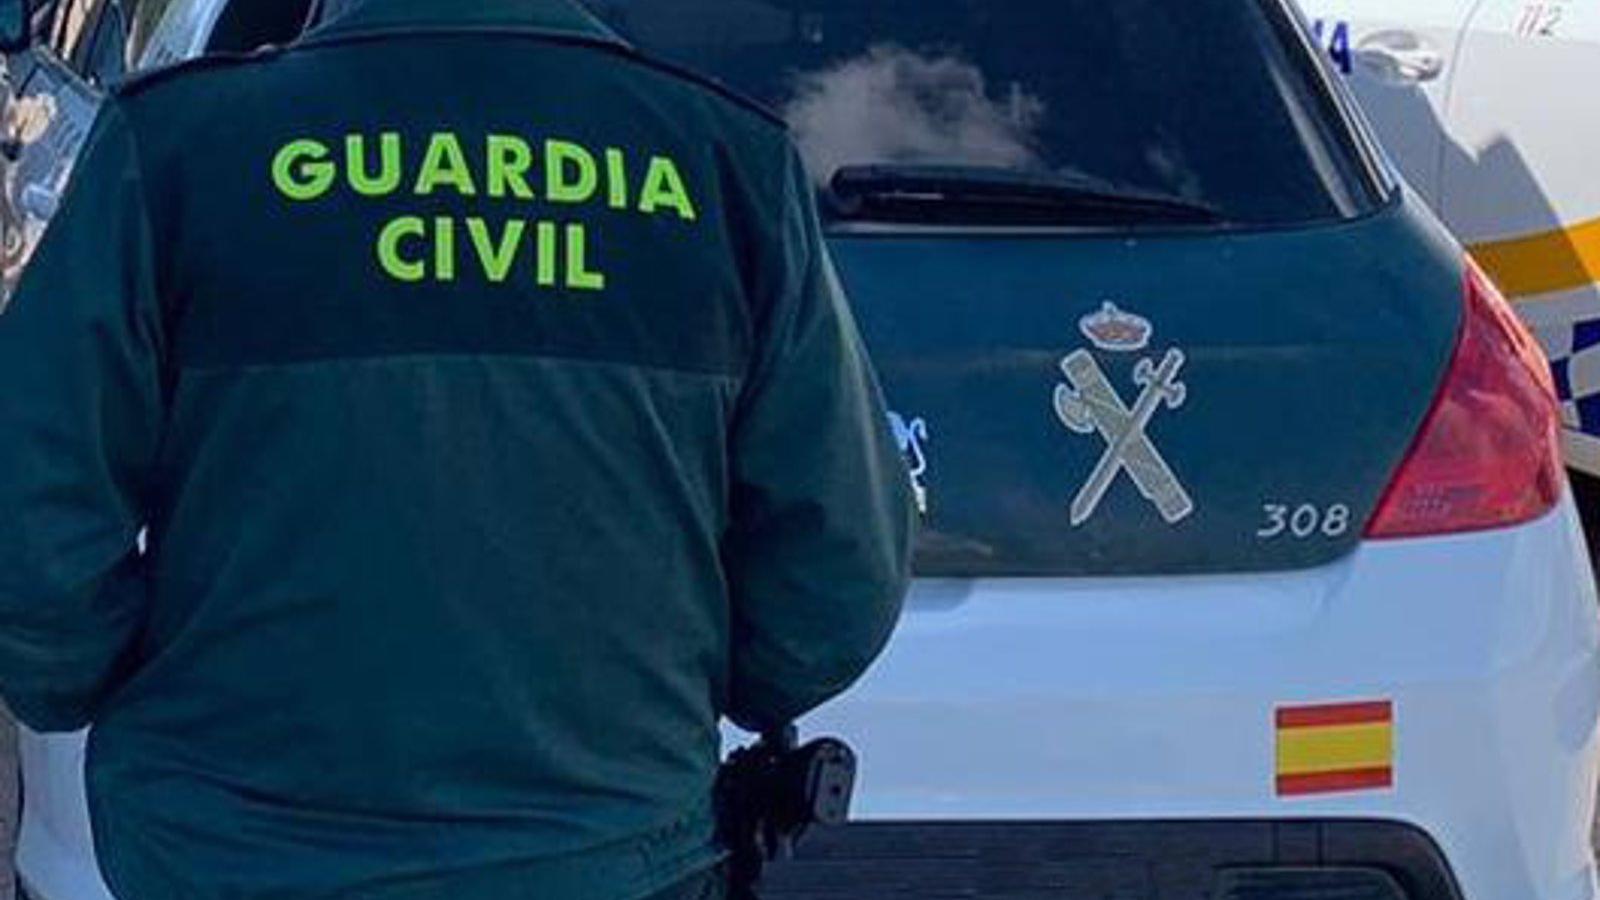 La Guardia Civil trata de identificar al hombre asesinado ayer en Villalba, posiblemente un indigente de la zona